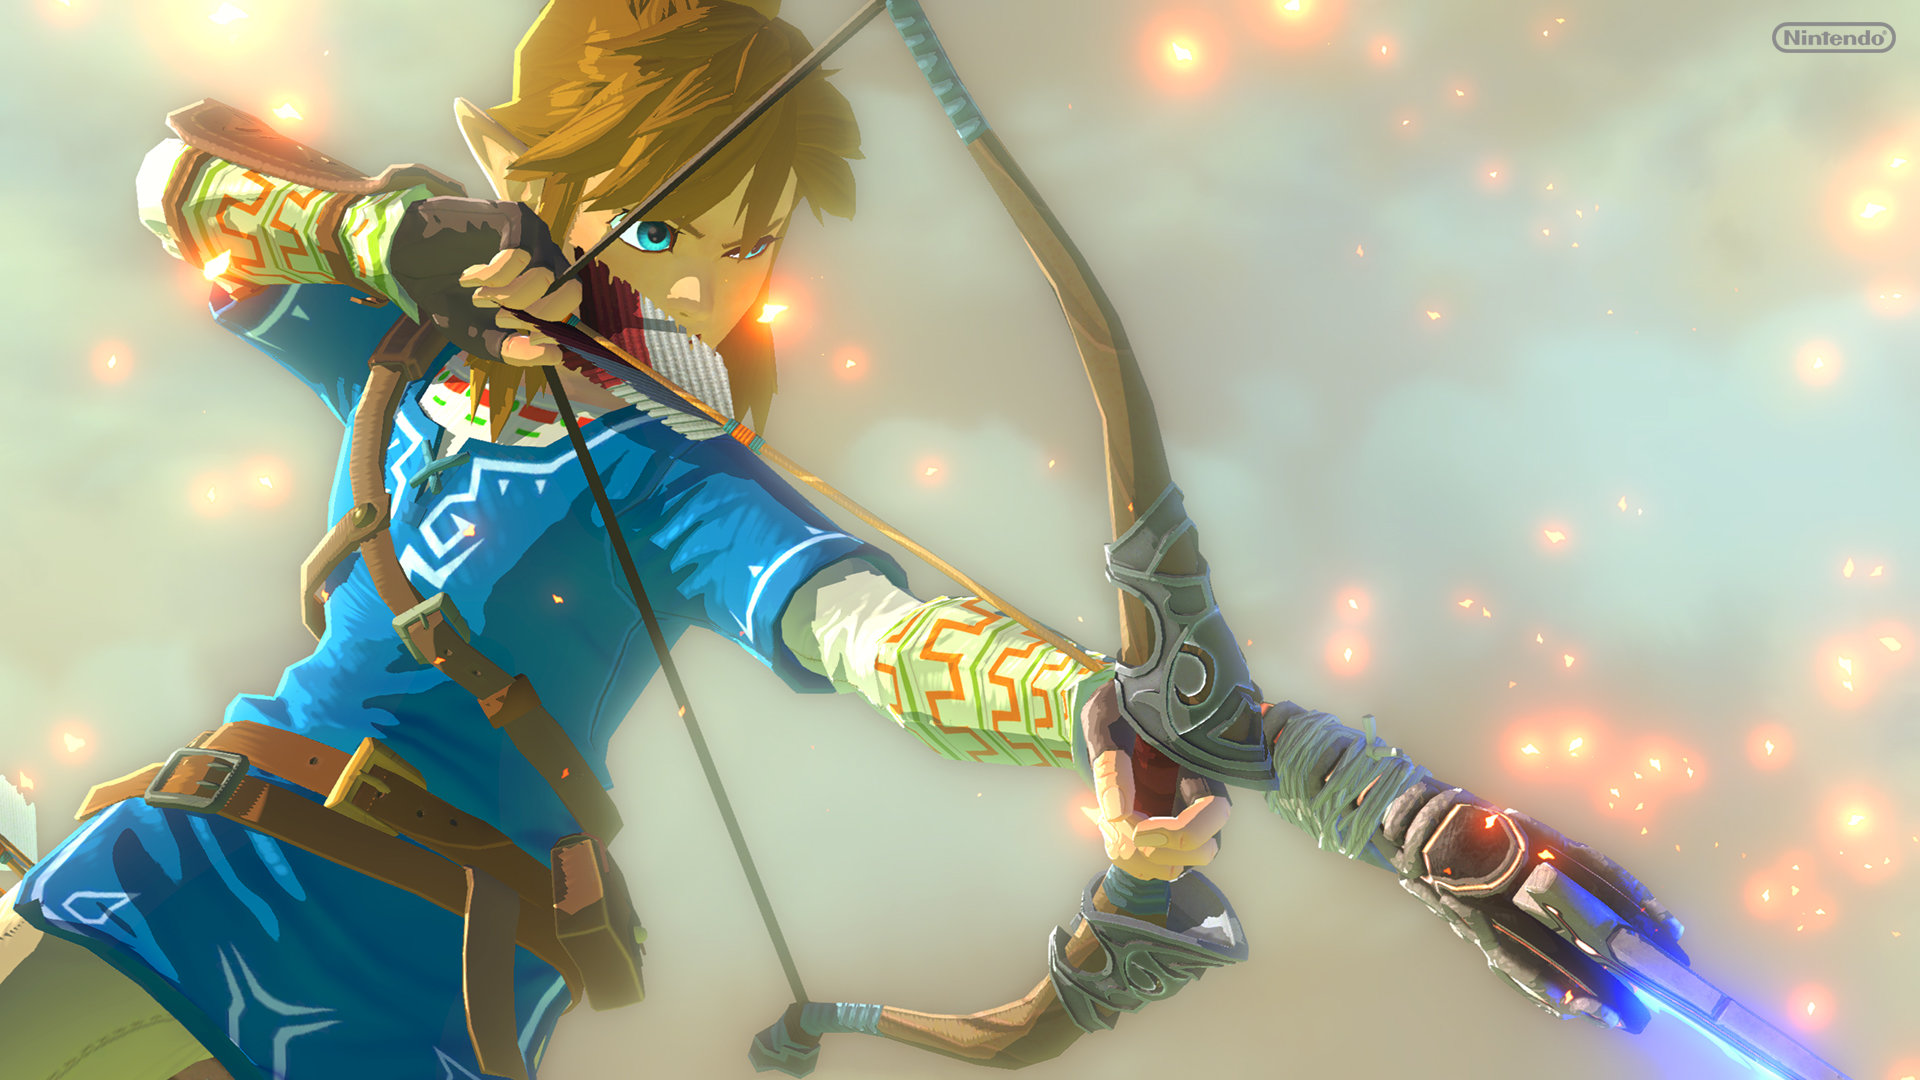 Wallpaper Wii U The Legend Of Zelda